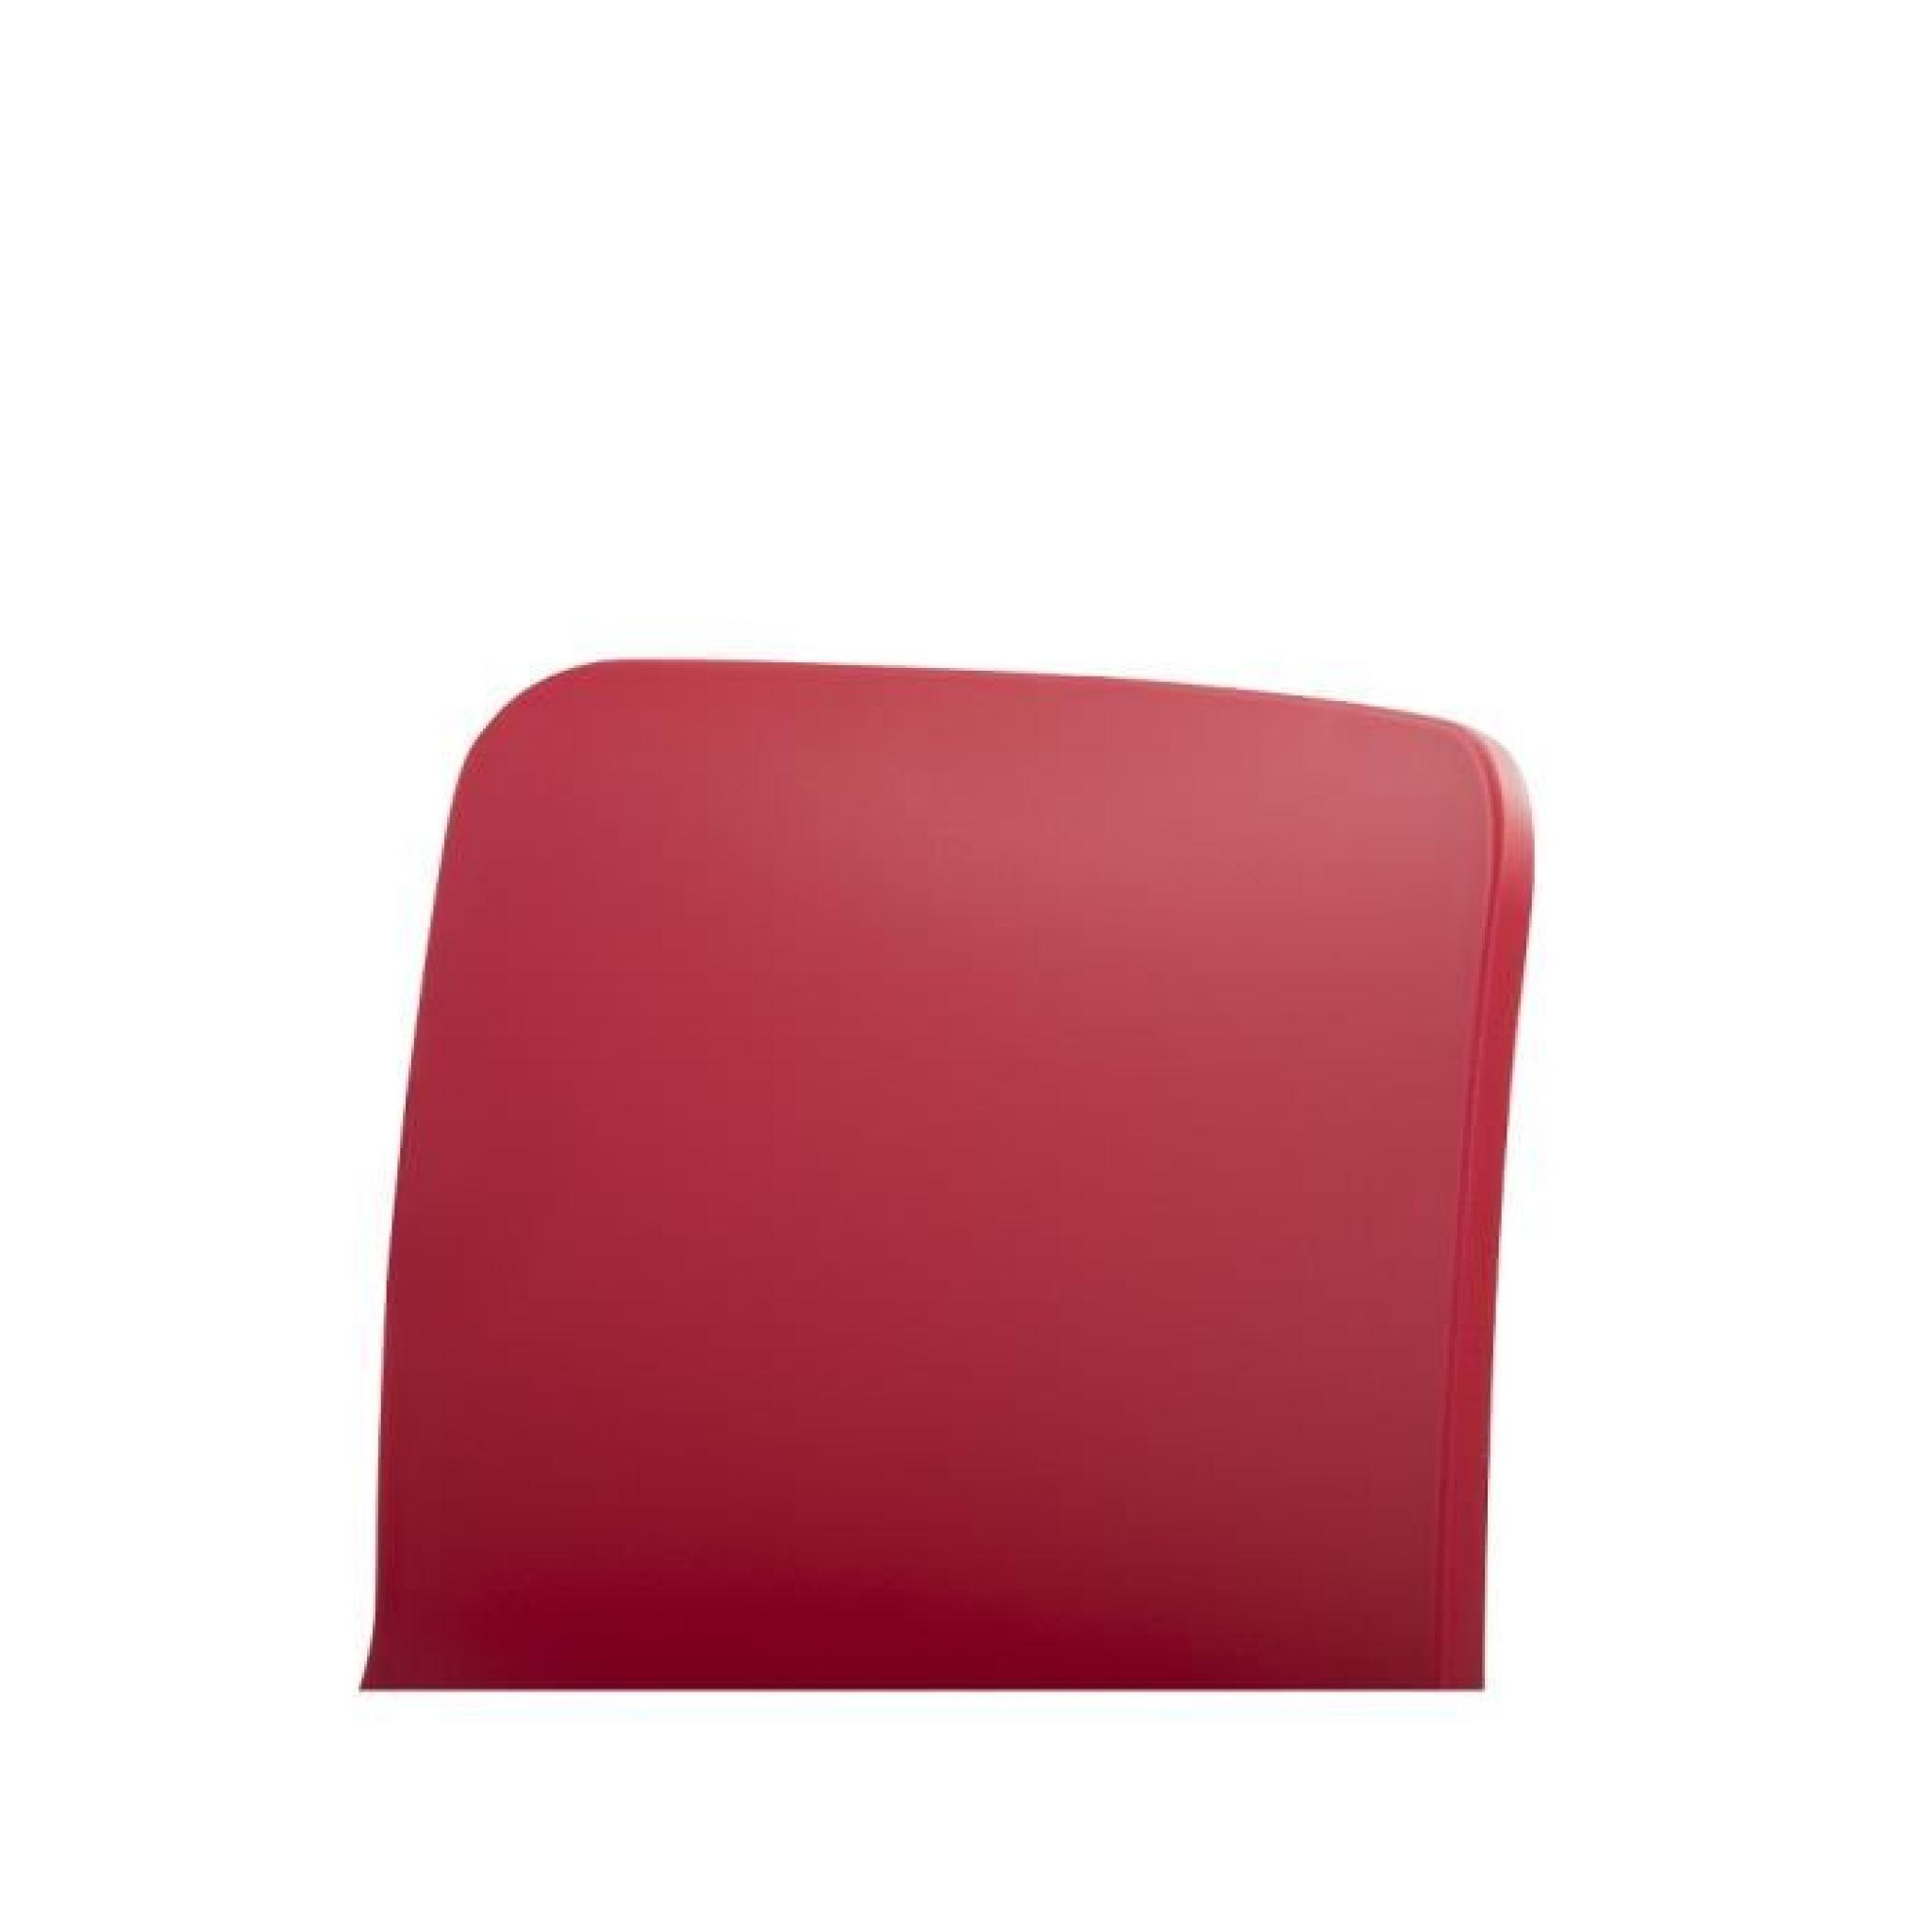 Chaise design - siège en plastique rouge - Soho pas cher